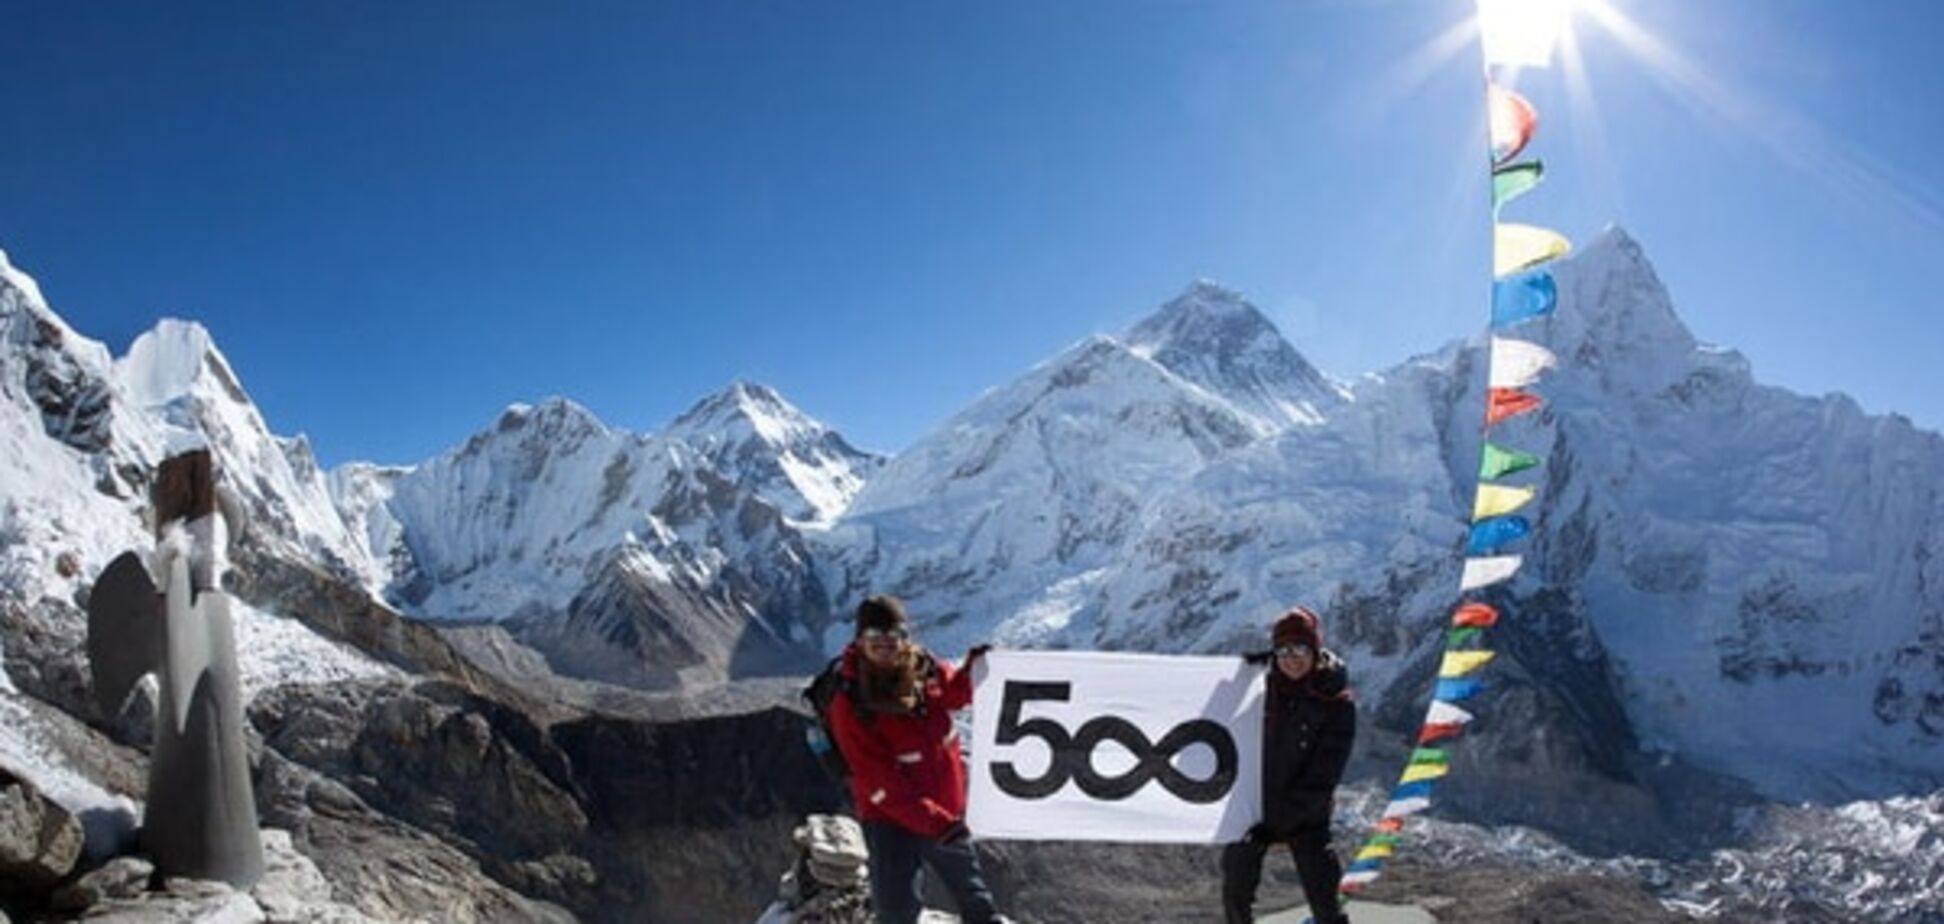 Эверест: 20 величественных фотографий самой высокой горы на Земле